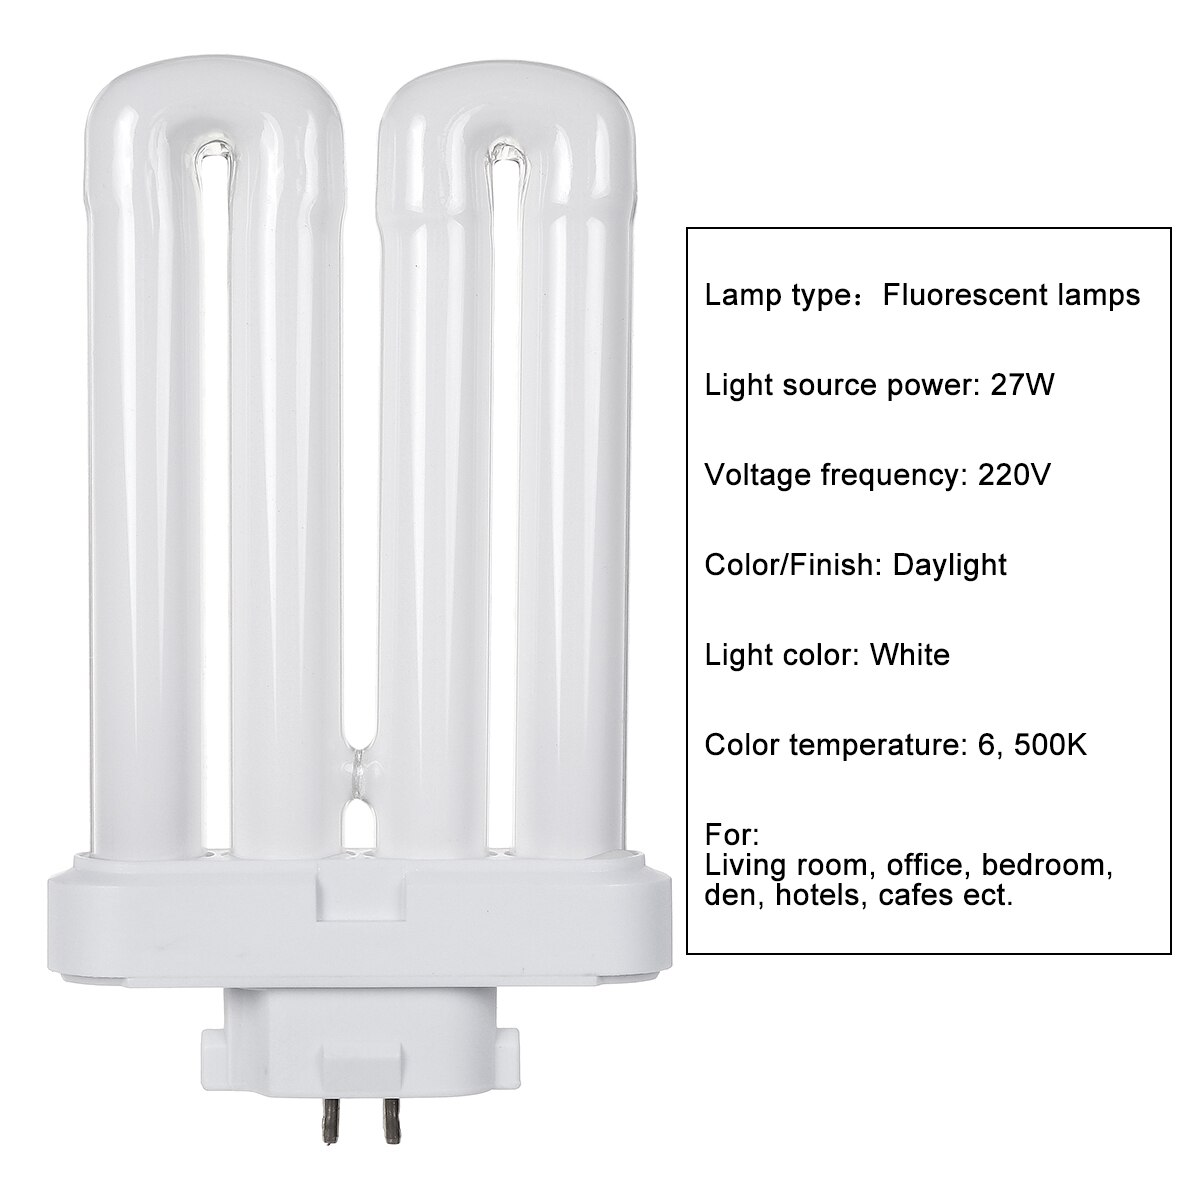 Højeffektiv 27w 6500k 4-- pin rør kompakt lysstofrør energibesparende pære hvid 4 rækker rør indendørs belysning